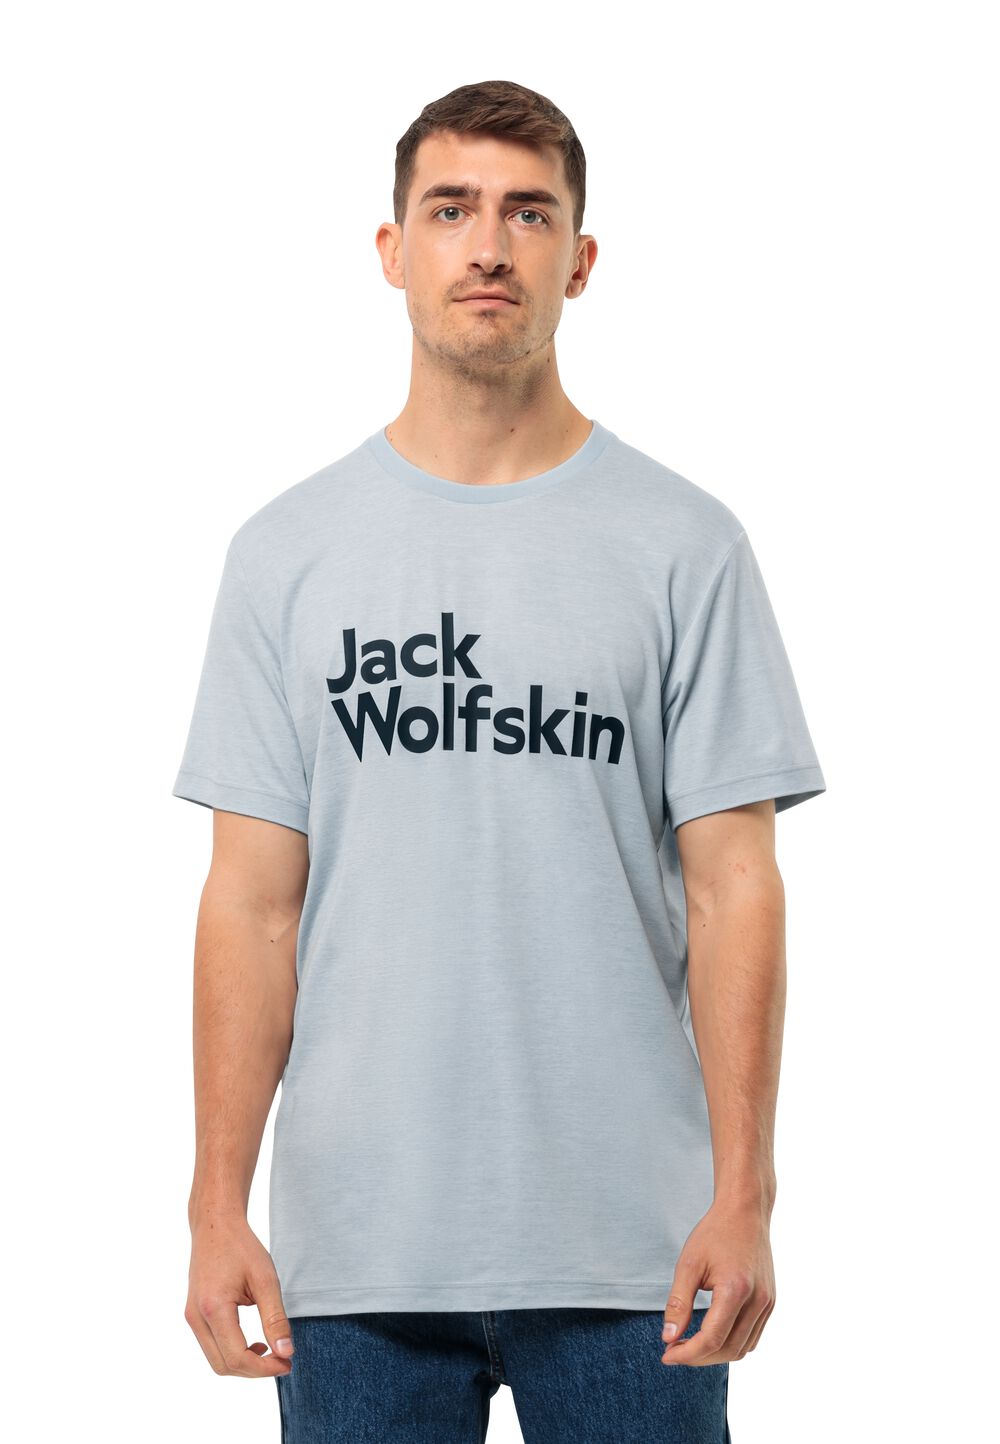 Jack Wolfskin Brand T-Shirt Men Functioneel shirt Heren M soft blue soft blue